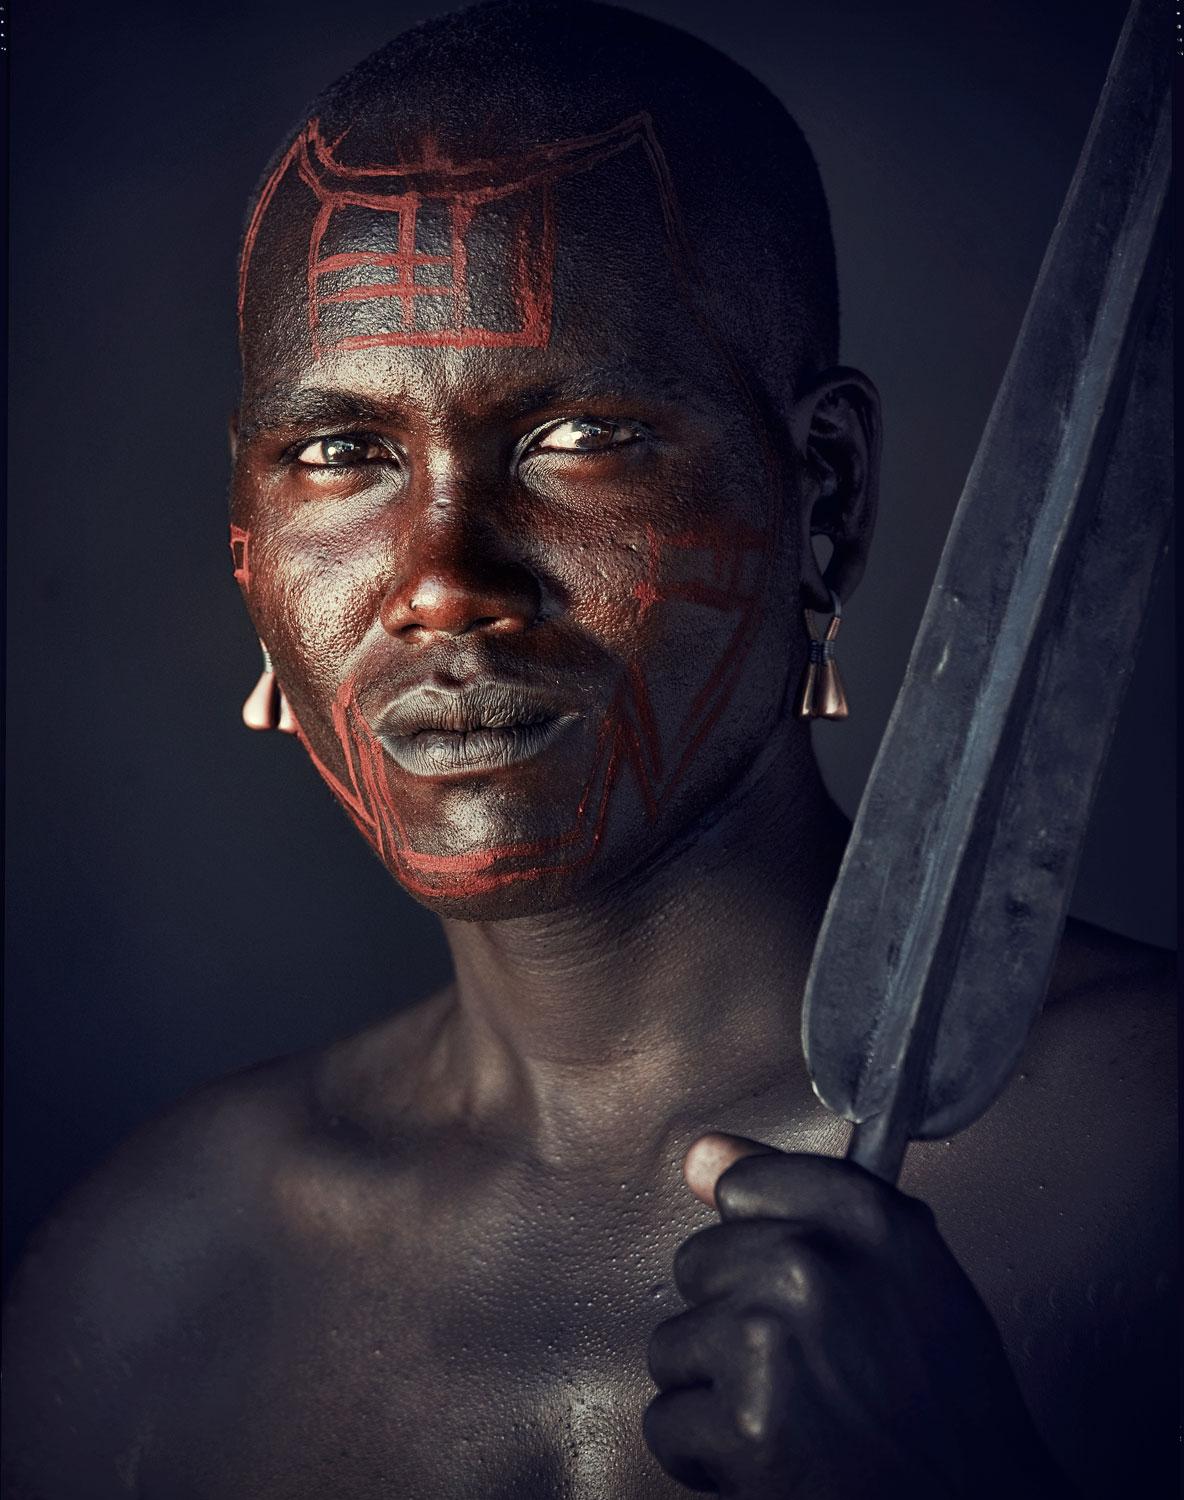 Tous les formats et éditions disponibles pour chaque format de cette photographie :
29.13" X 24.41" Edition de 9
47.24" X 39.37" Edition de 6
66.93" X 55.12" Edition de 3
81.69" X 66.93" Edition de 1

VIII 452A - Maasai - Tarangire, Rift Escarpment